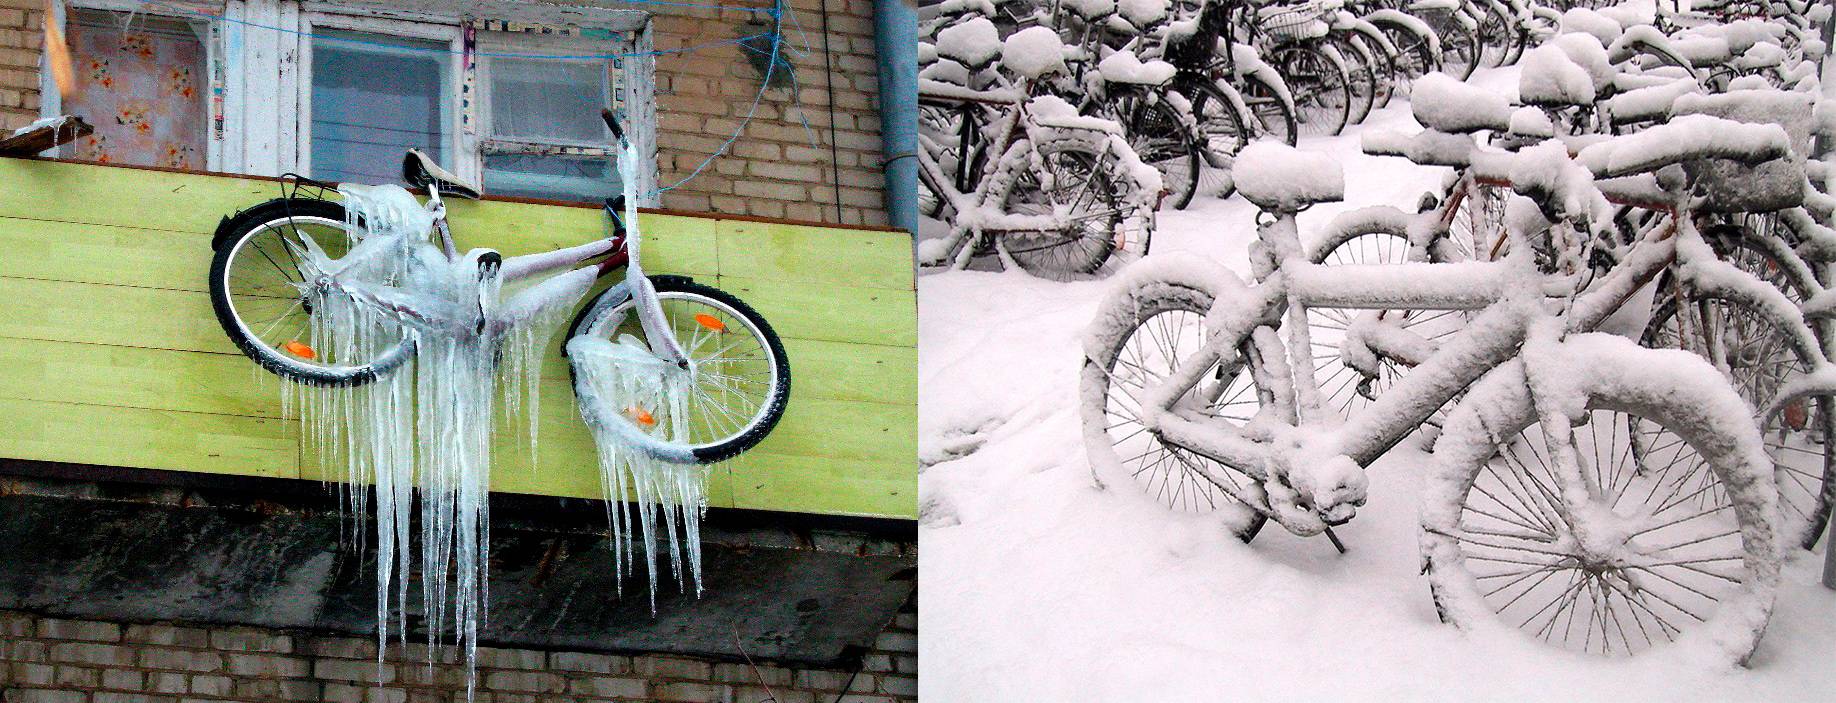 Как подготовить велосипед к зиме своими руками - выбор места и подготовка к консервации